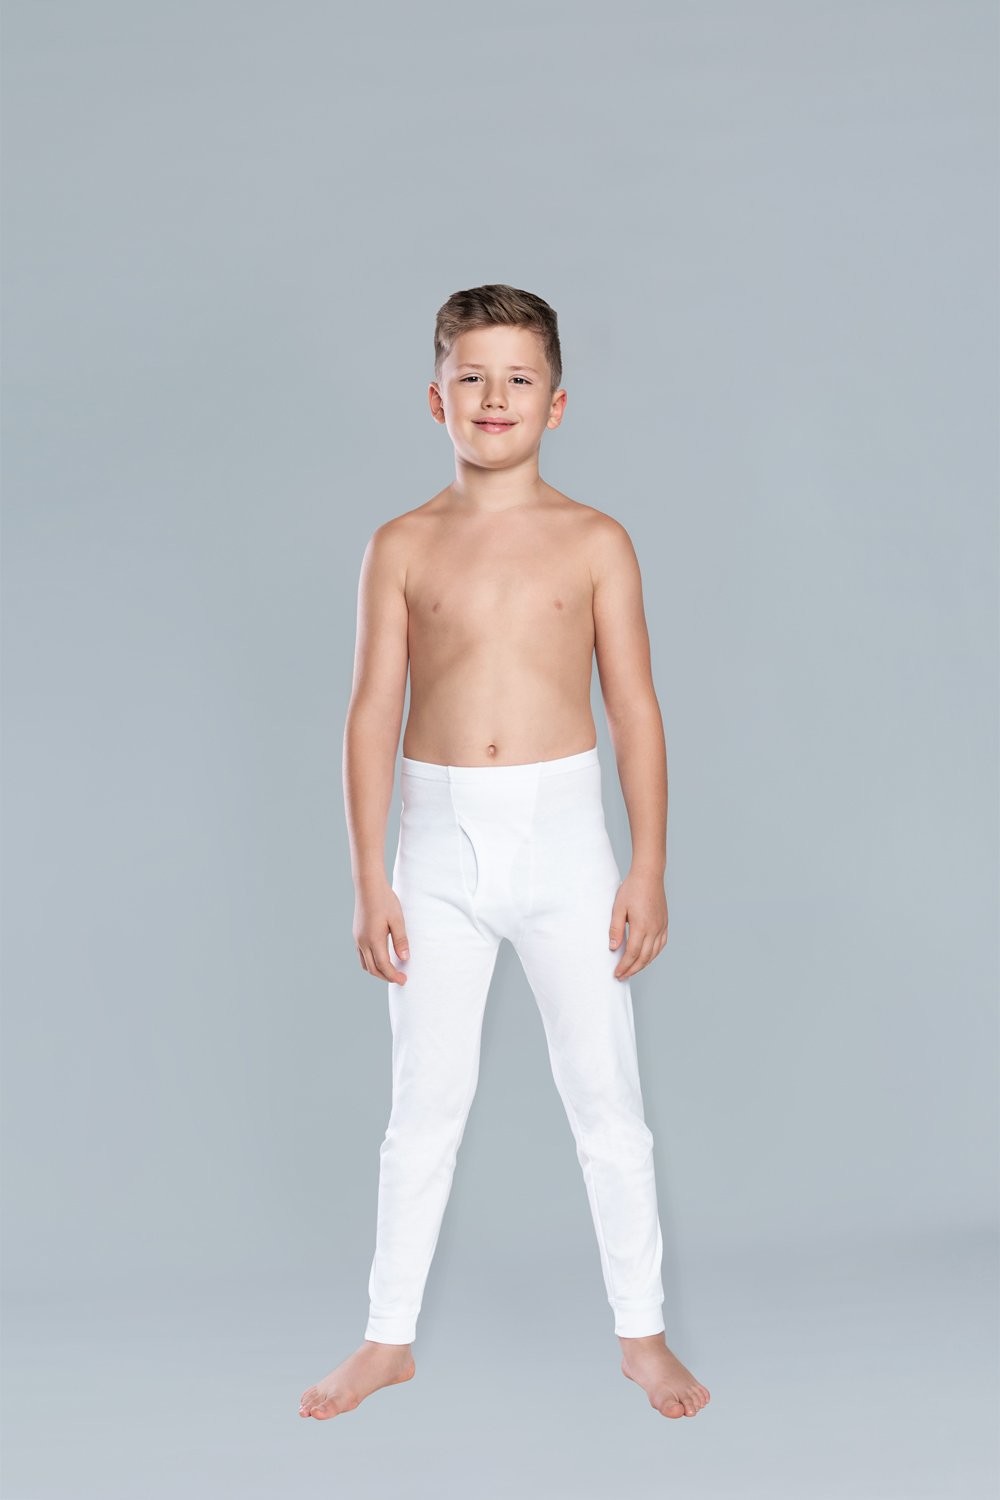 Dlouhé chlapecké kalhoty Jaś - bílé